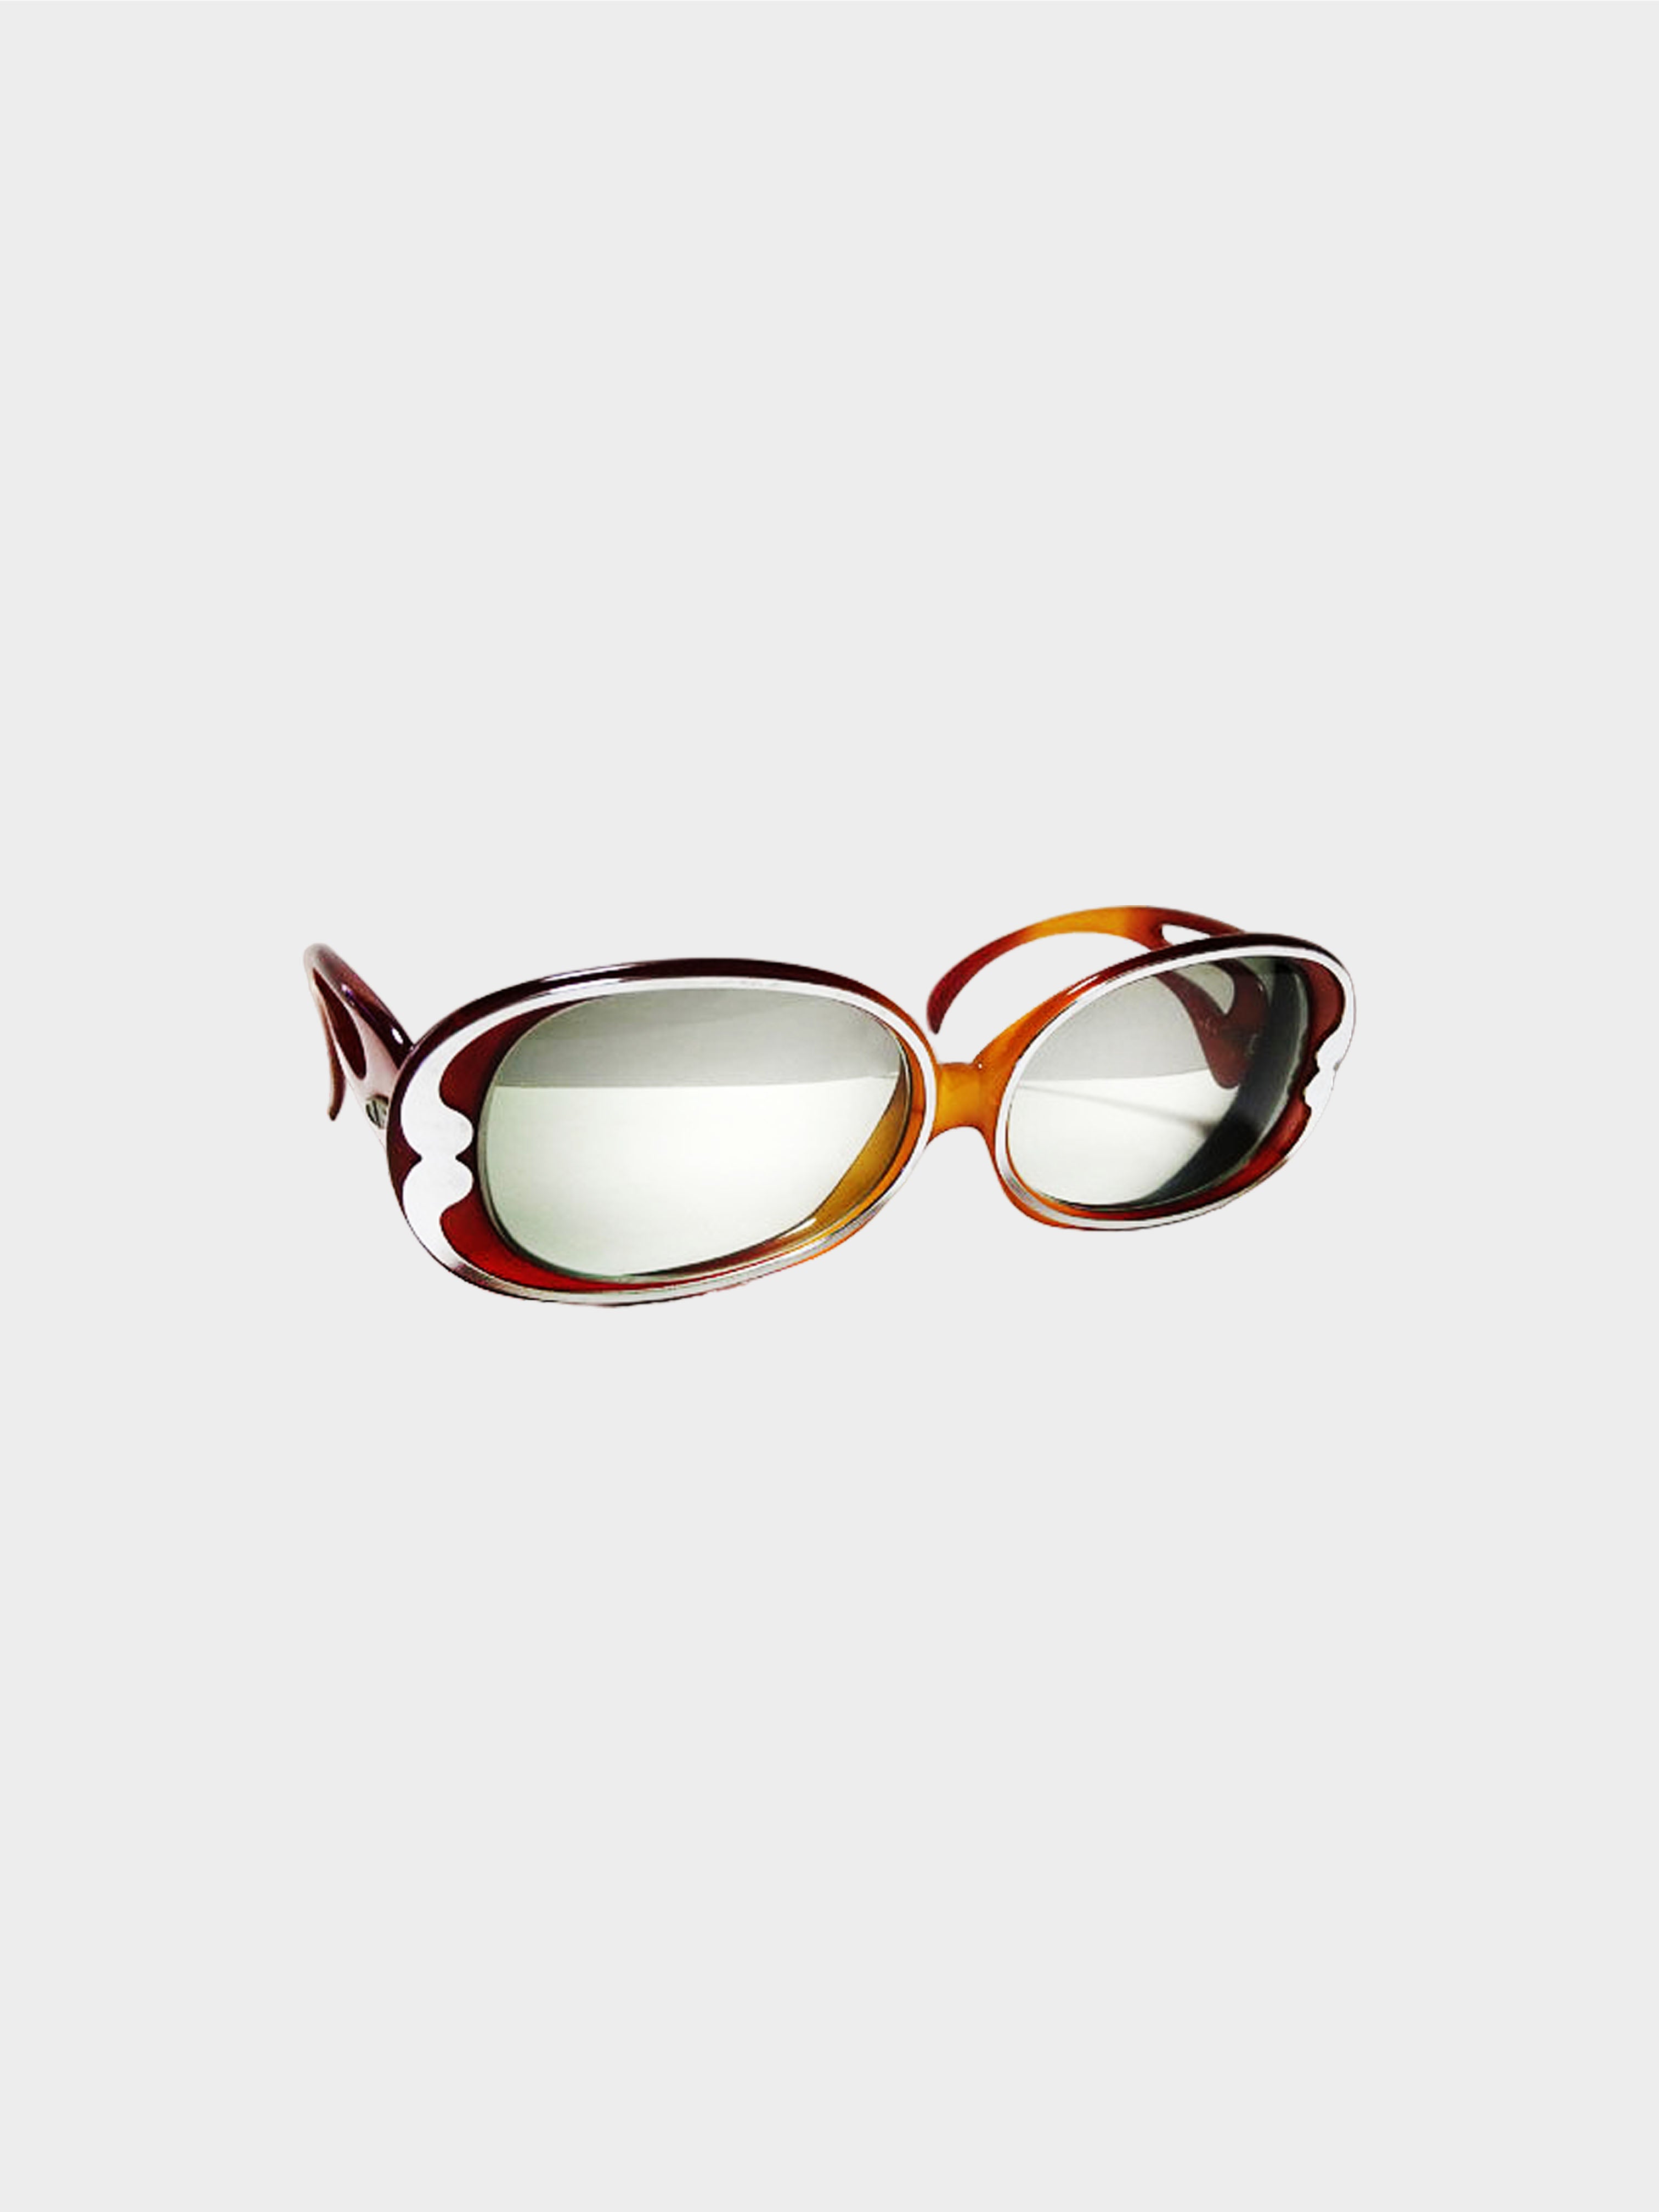 Christian Dior 1990s Rare Amber Prescription Sunglasses